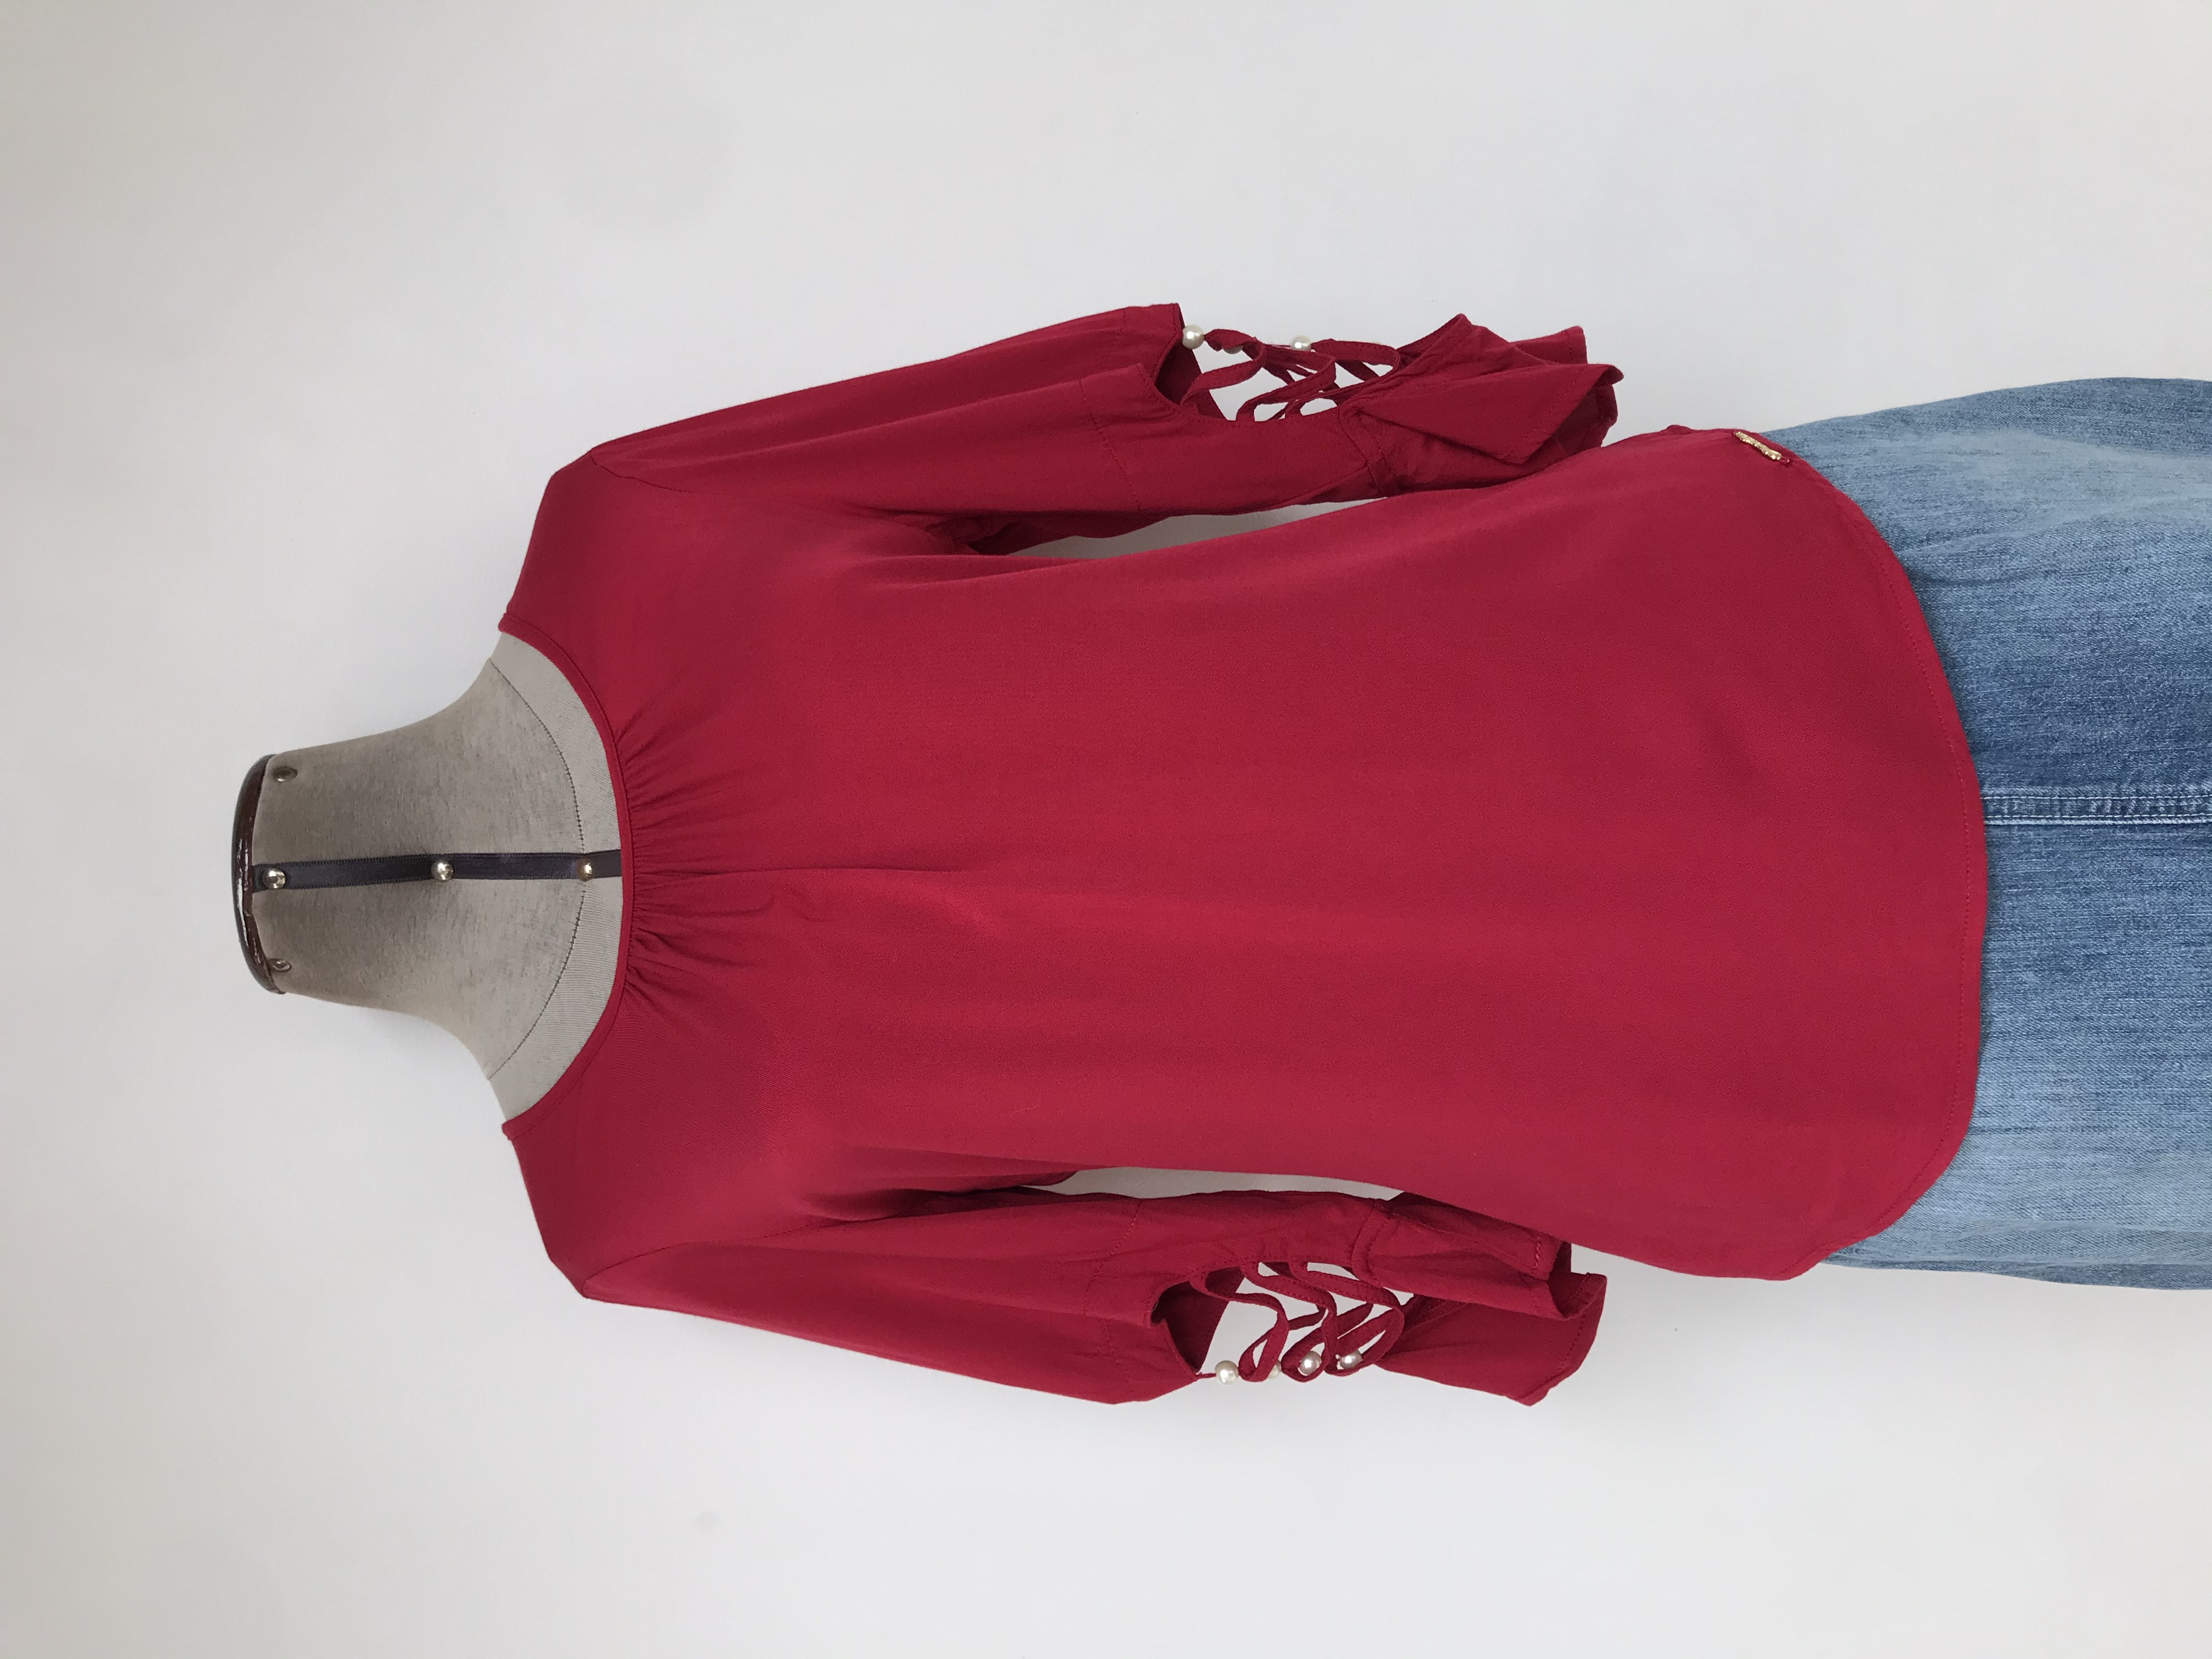 Blusa roja, tela fresca tipo chalis, mangas con calado y perlas
Talla S